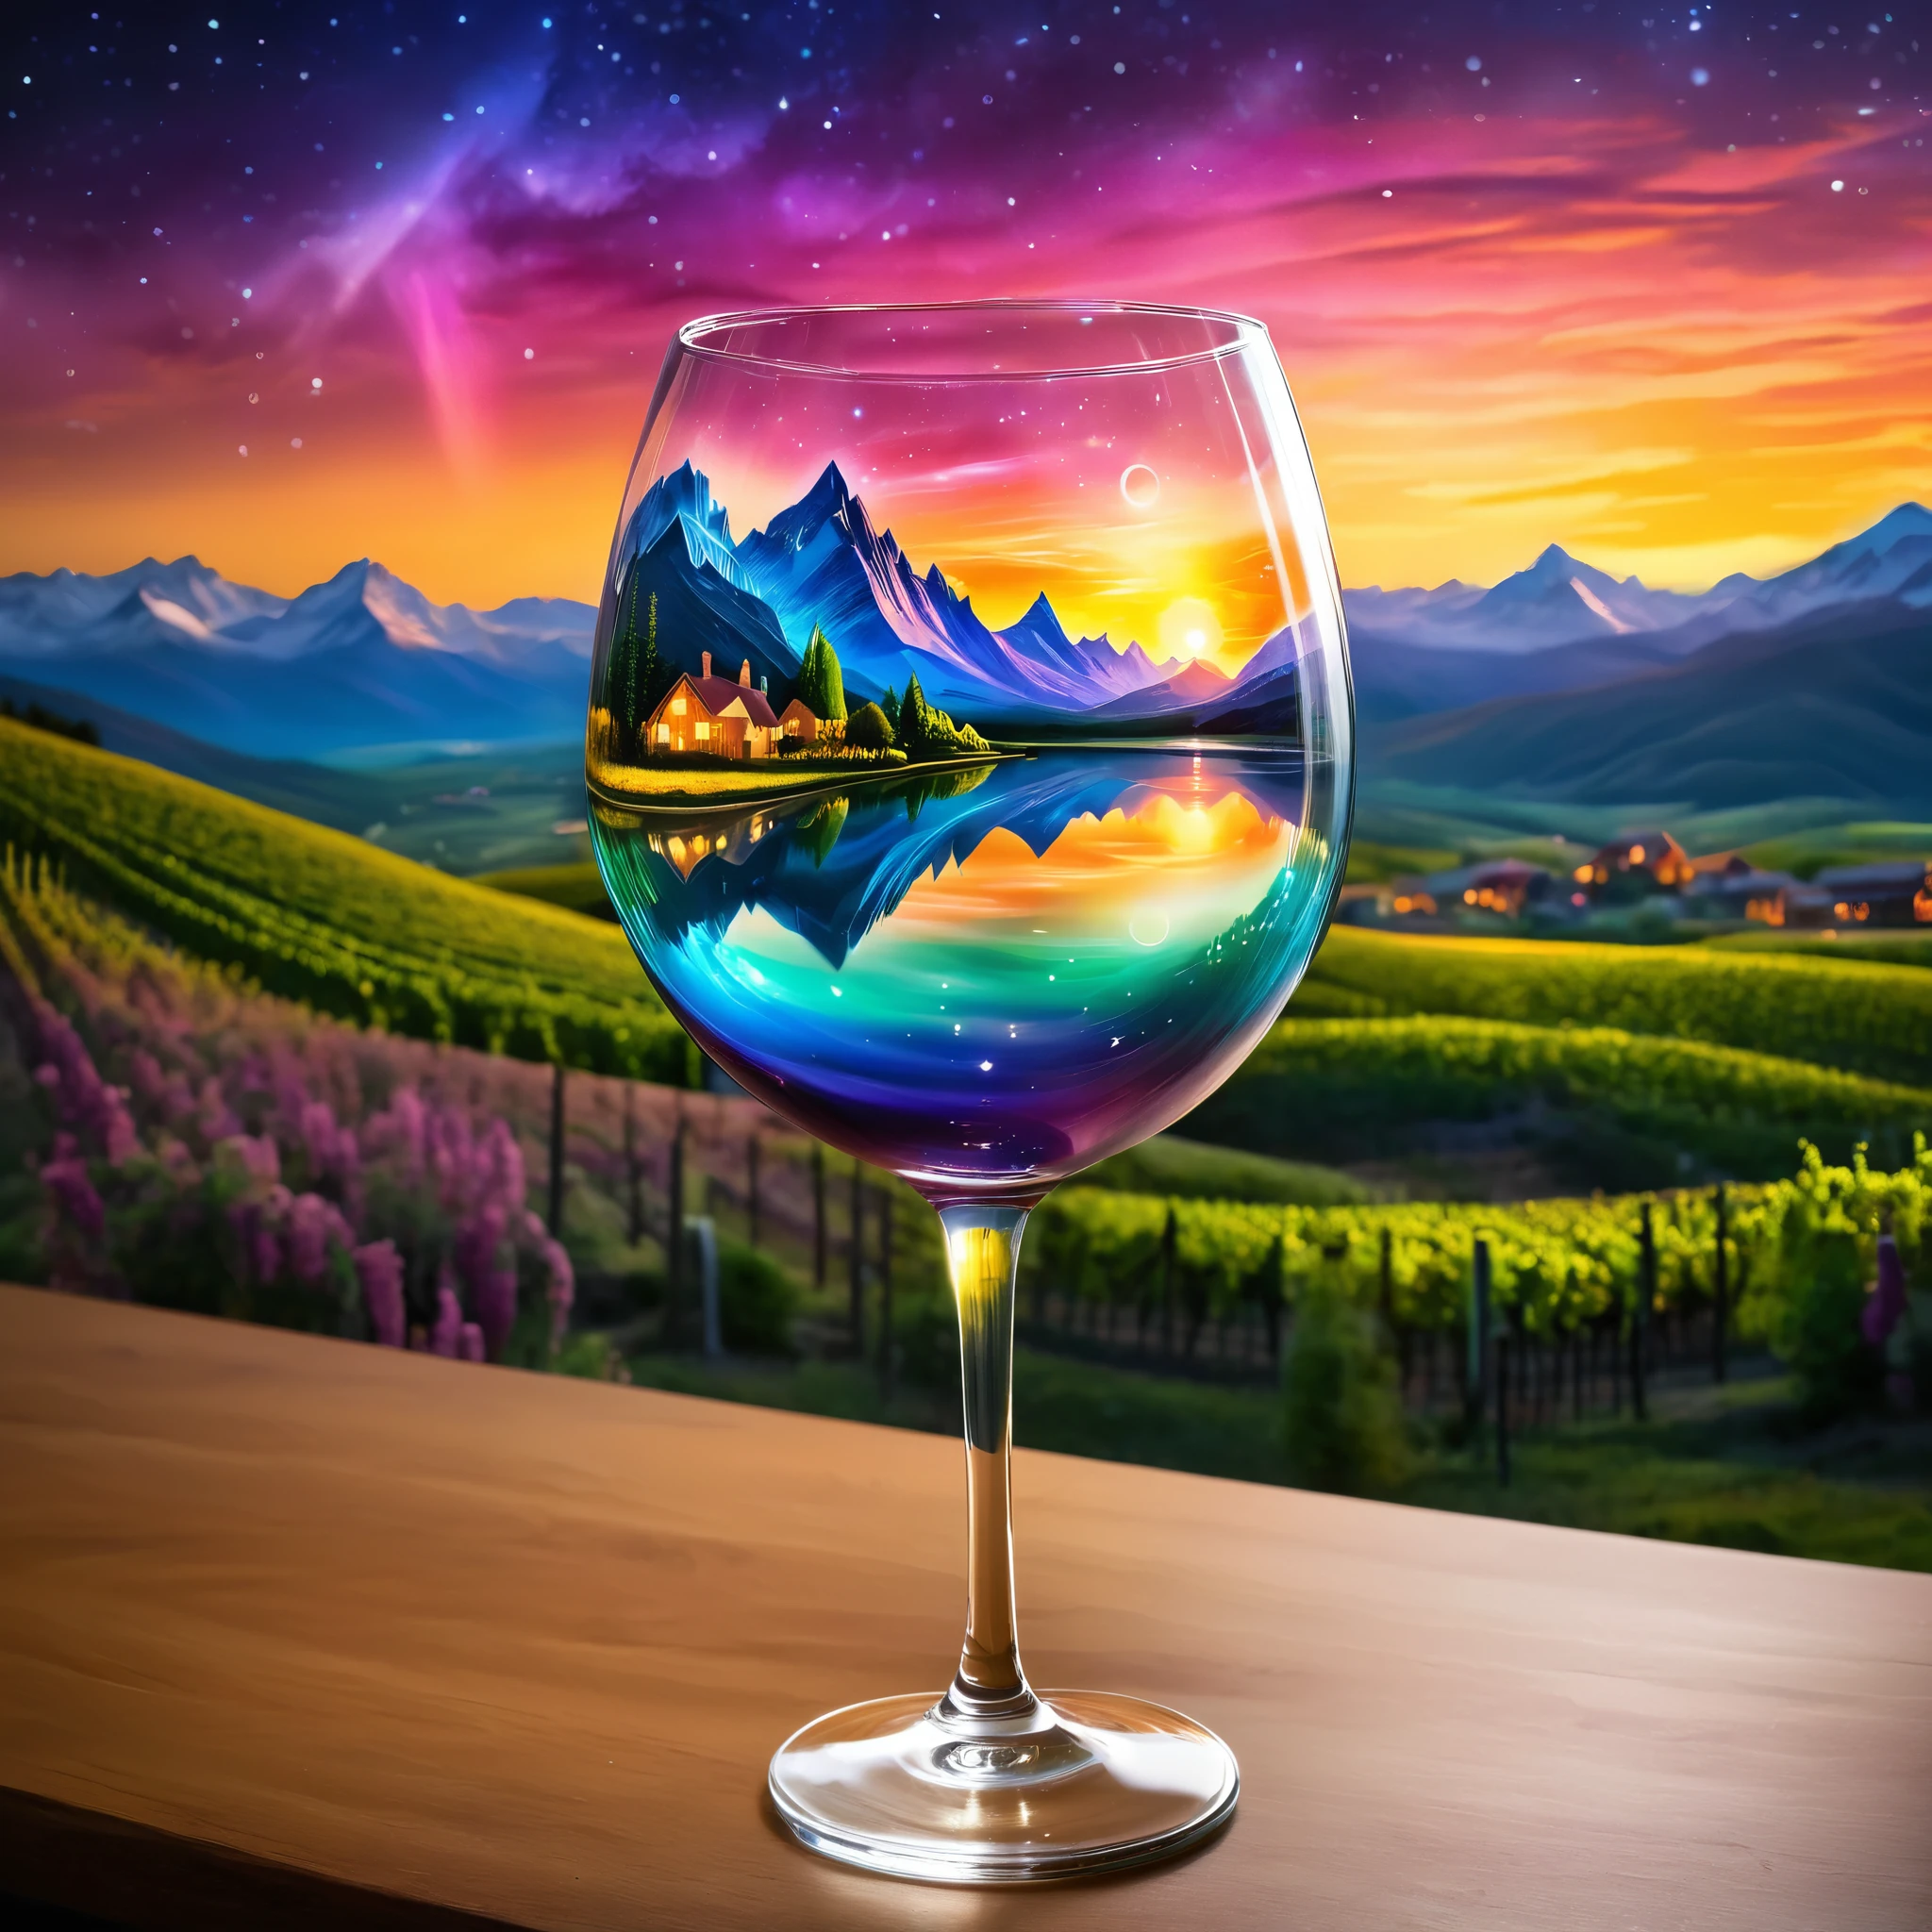 خلق مشهد سماوي داخل كأس النبيذ, تتميز بمناظر طبيعية سريالية مع الجبال وسماء الشفق القطبي. تتضمن الخلفية غروب الشمس المتوهج ومنظر المدينة. يجب أن يكون الأسلوب خياليًا مع عناصر أثيرية. صورة واقعية للغاية, ألوان نابضة بالحياة للغاية, 16 ك